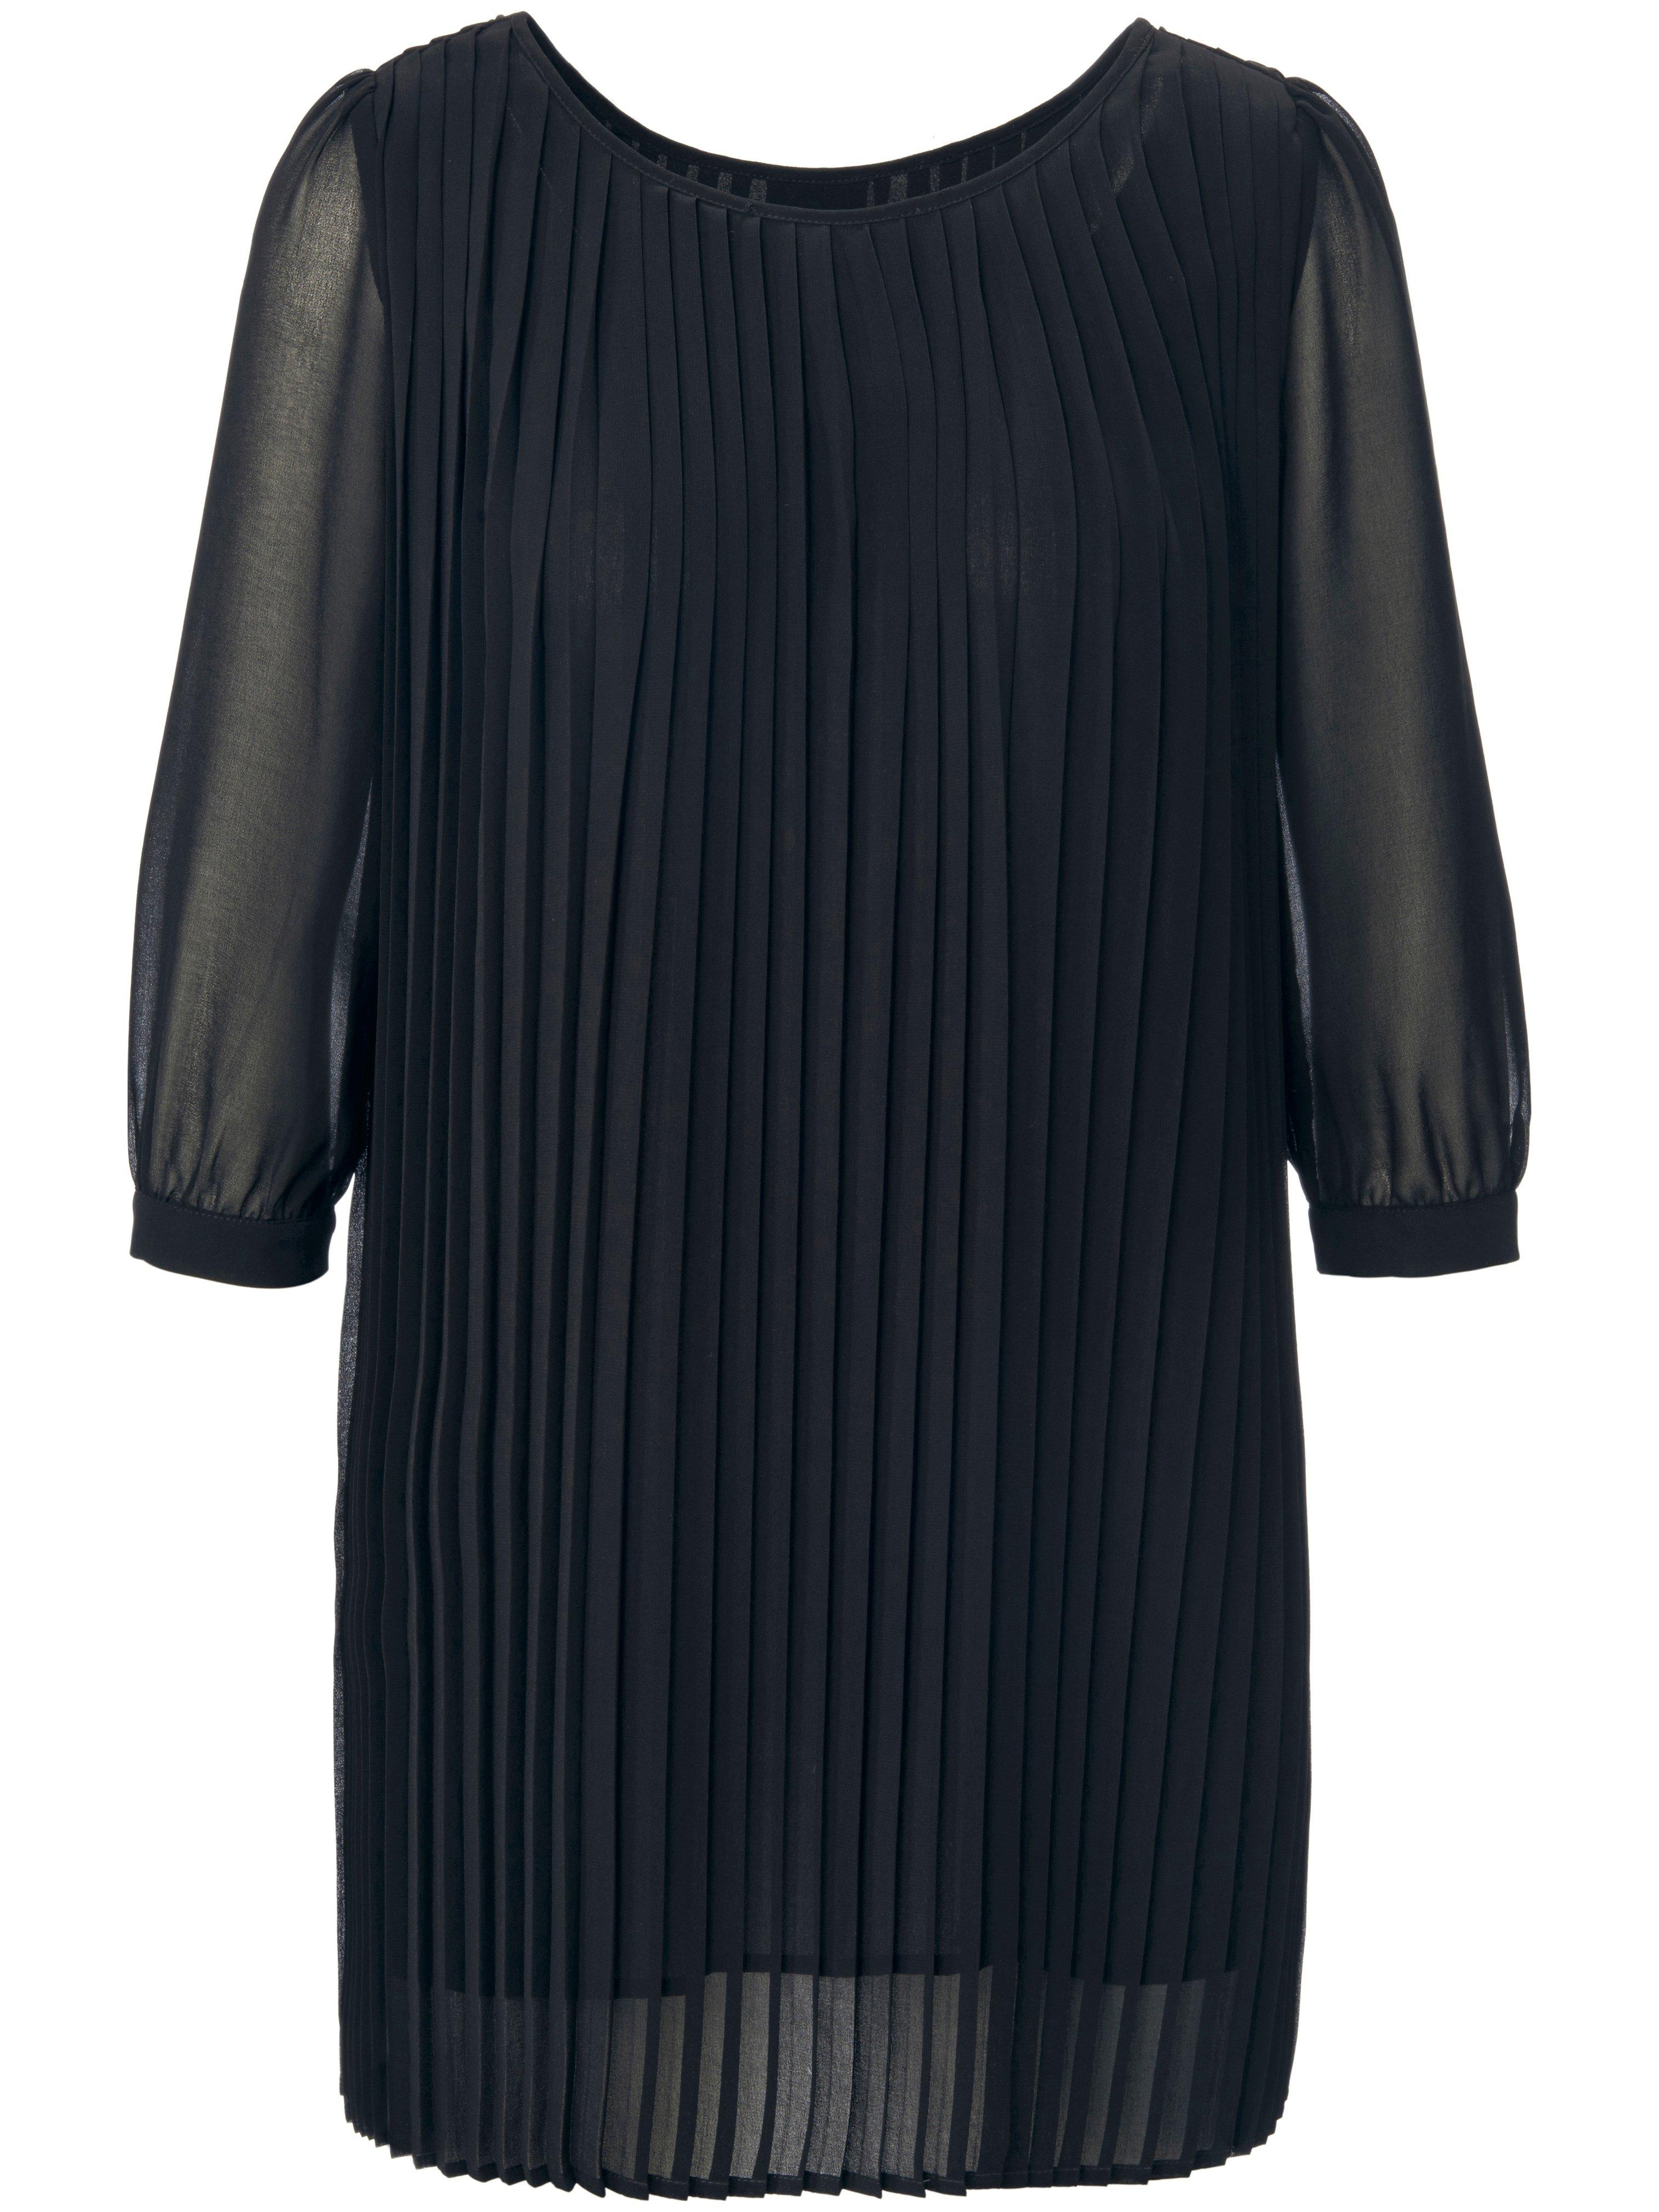 Kurzarmbluse Pleated blouse with 3/4-length sleeves